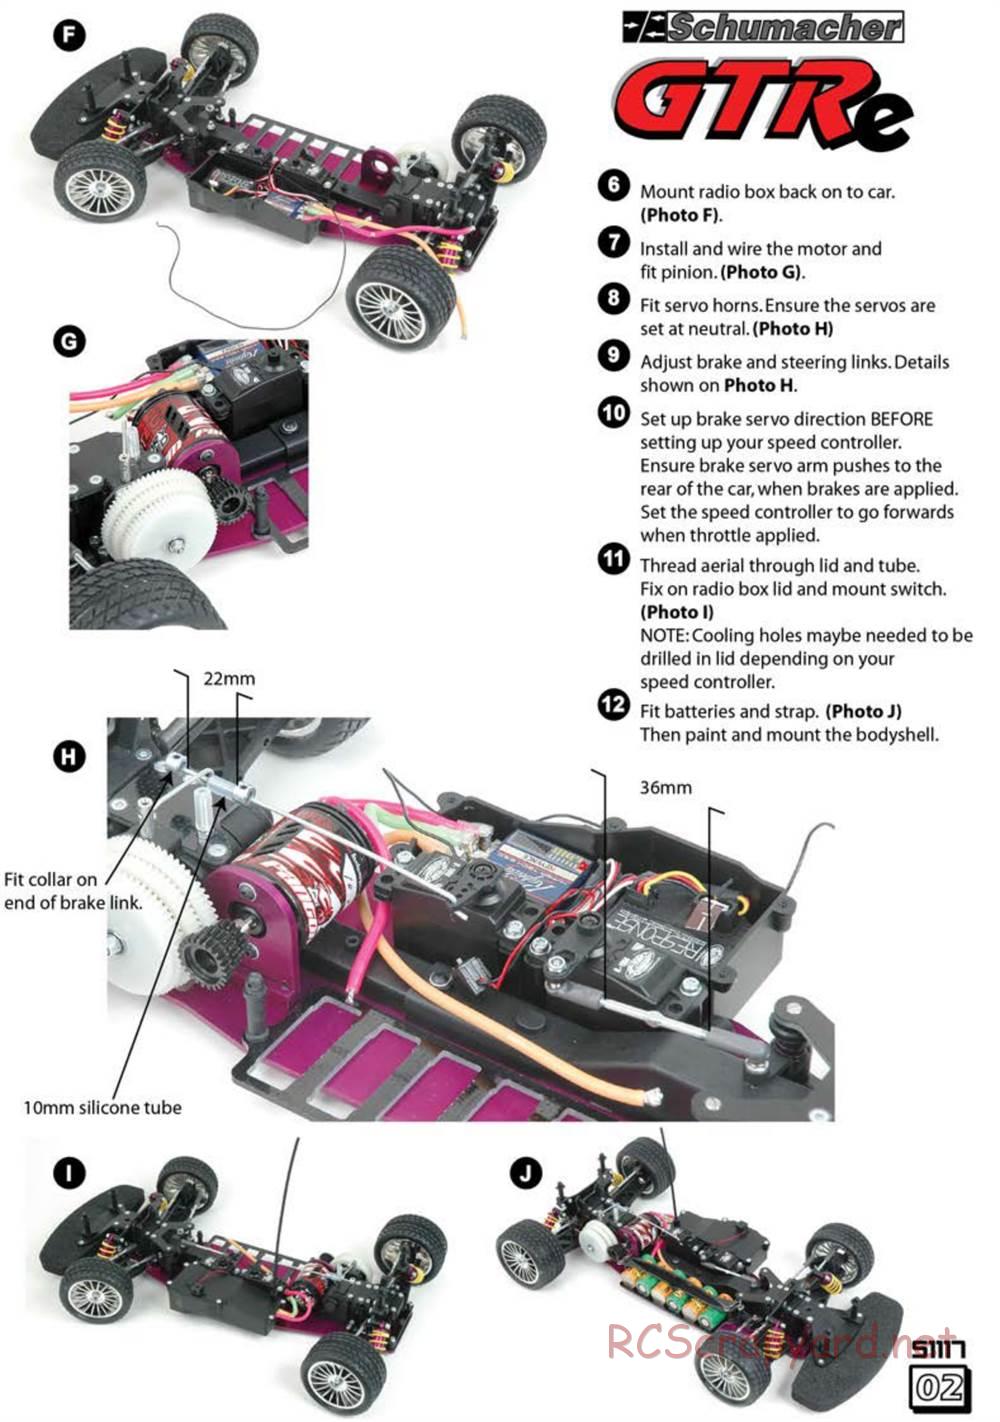 Schumacher - Menace GTRe - Supplement Instructions - Page 2